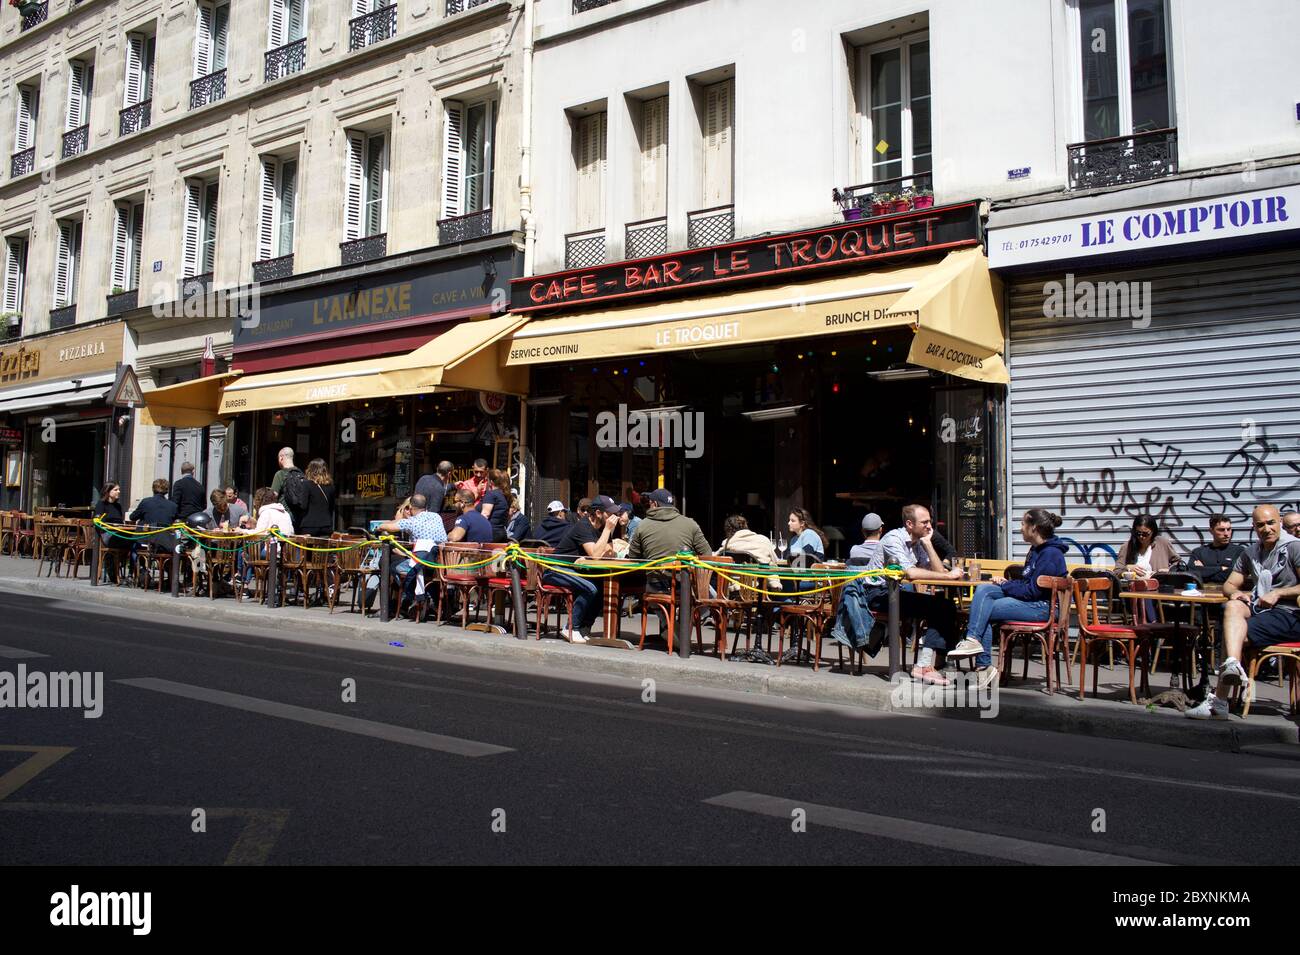 Los parisinos disfrutan de una bebida el sábado por la tarde en una terraza soleada, abierta después de restricciones de cierre covid-19 - Café bar le Troquet, Rue de Clignancourt, 75018 París, Francia Foto de stock